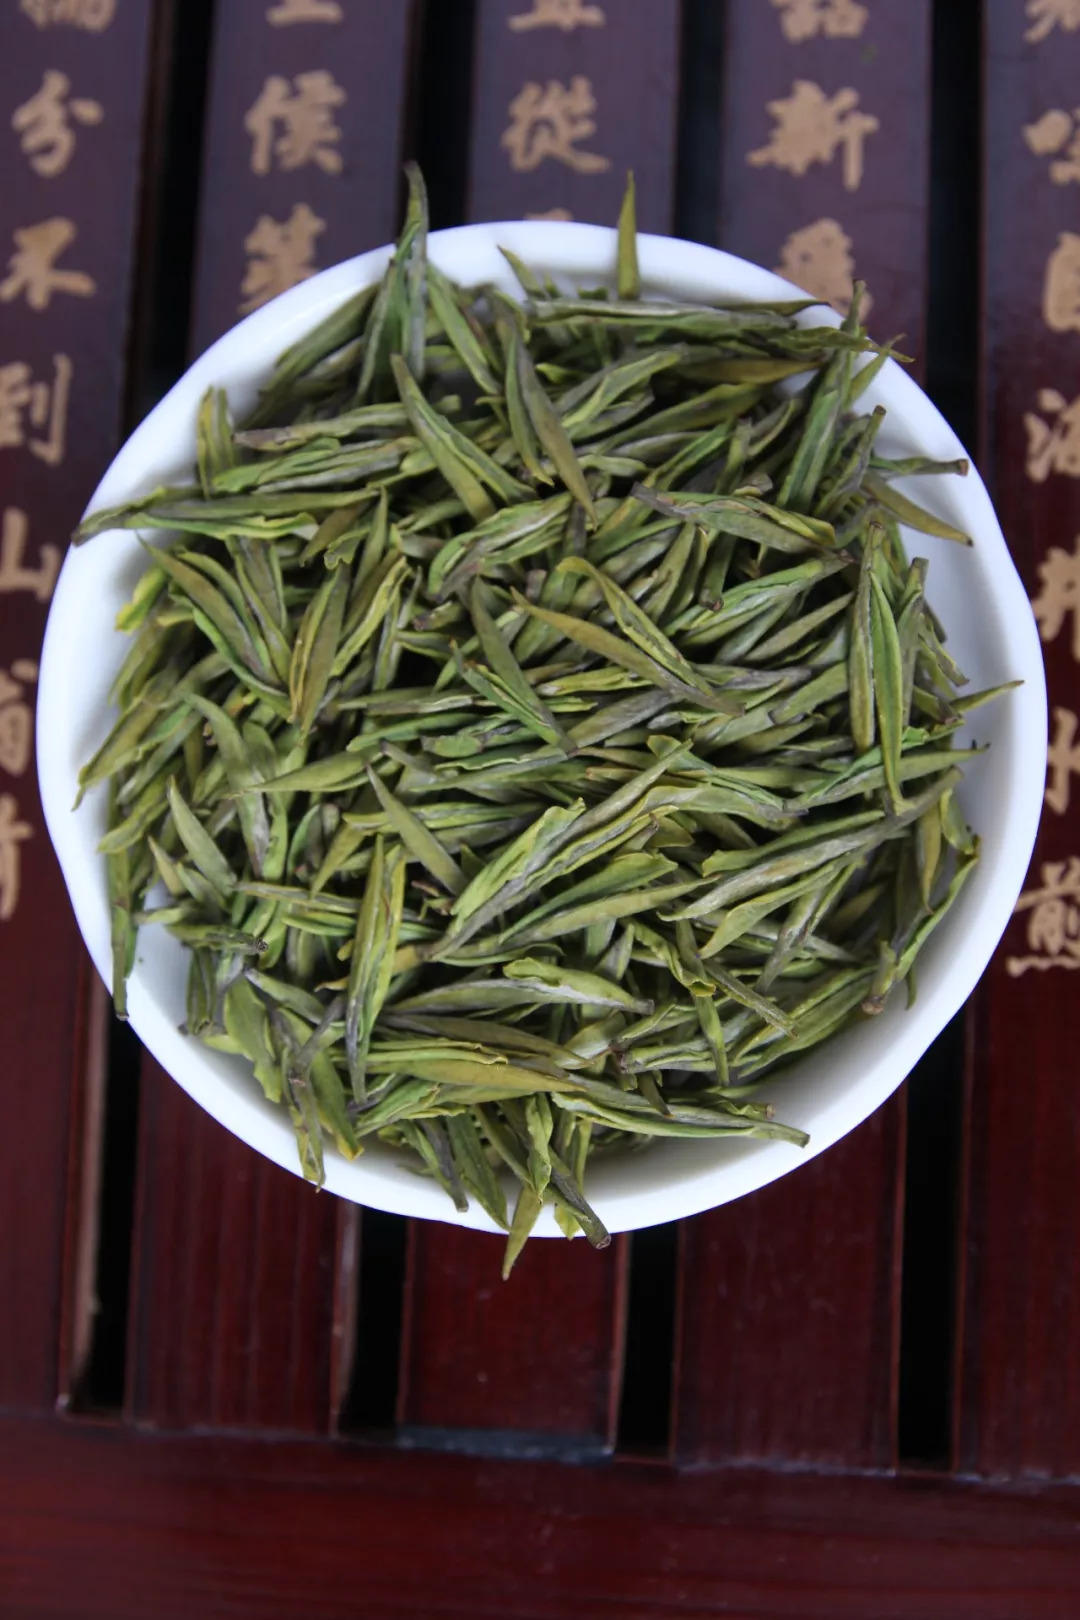 而且,三清山白茶与中国六大茶类中白茶类不是同一个的概念,如:白毫